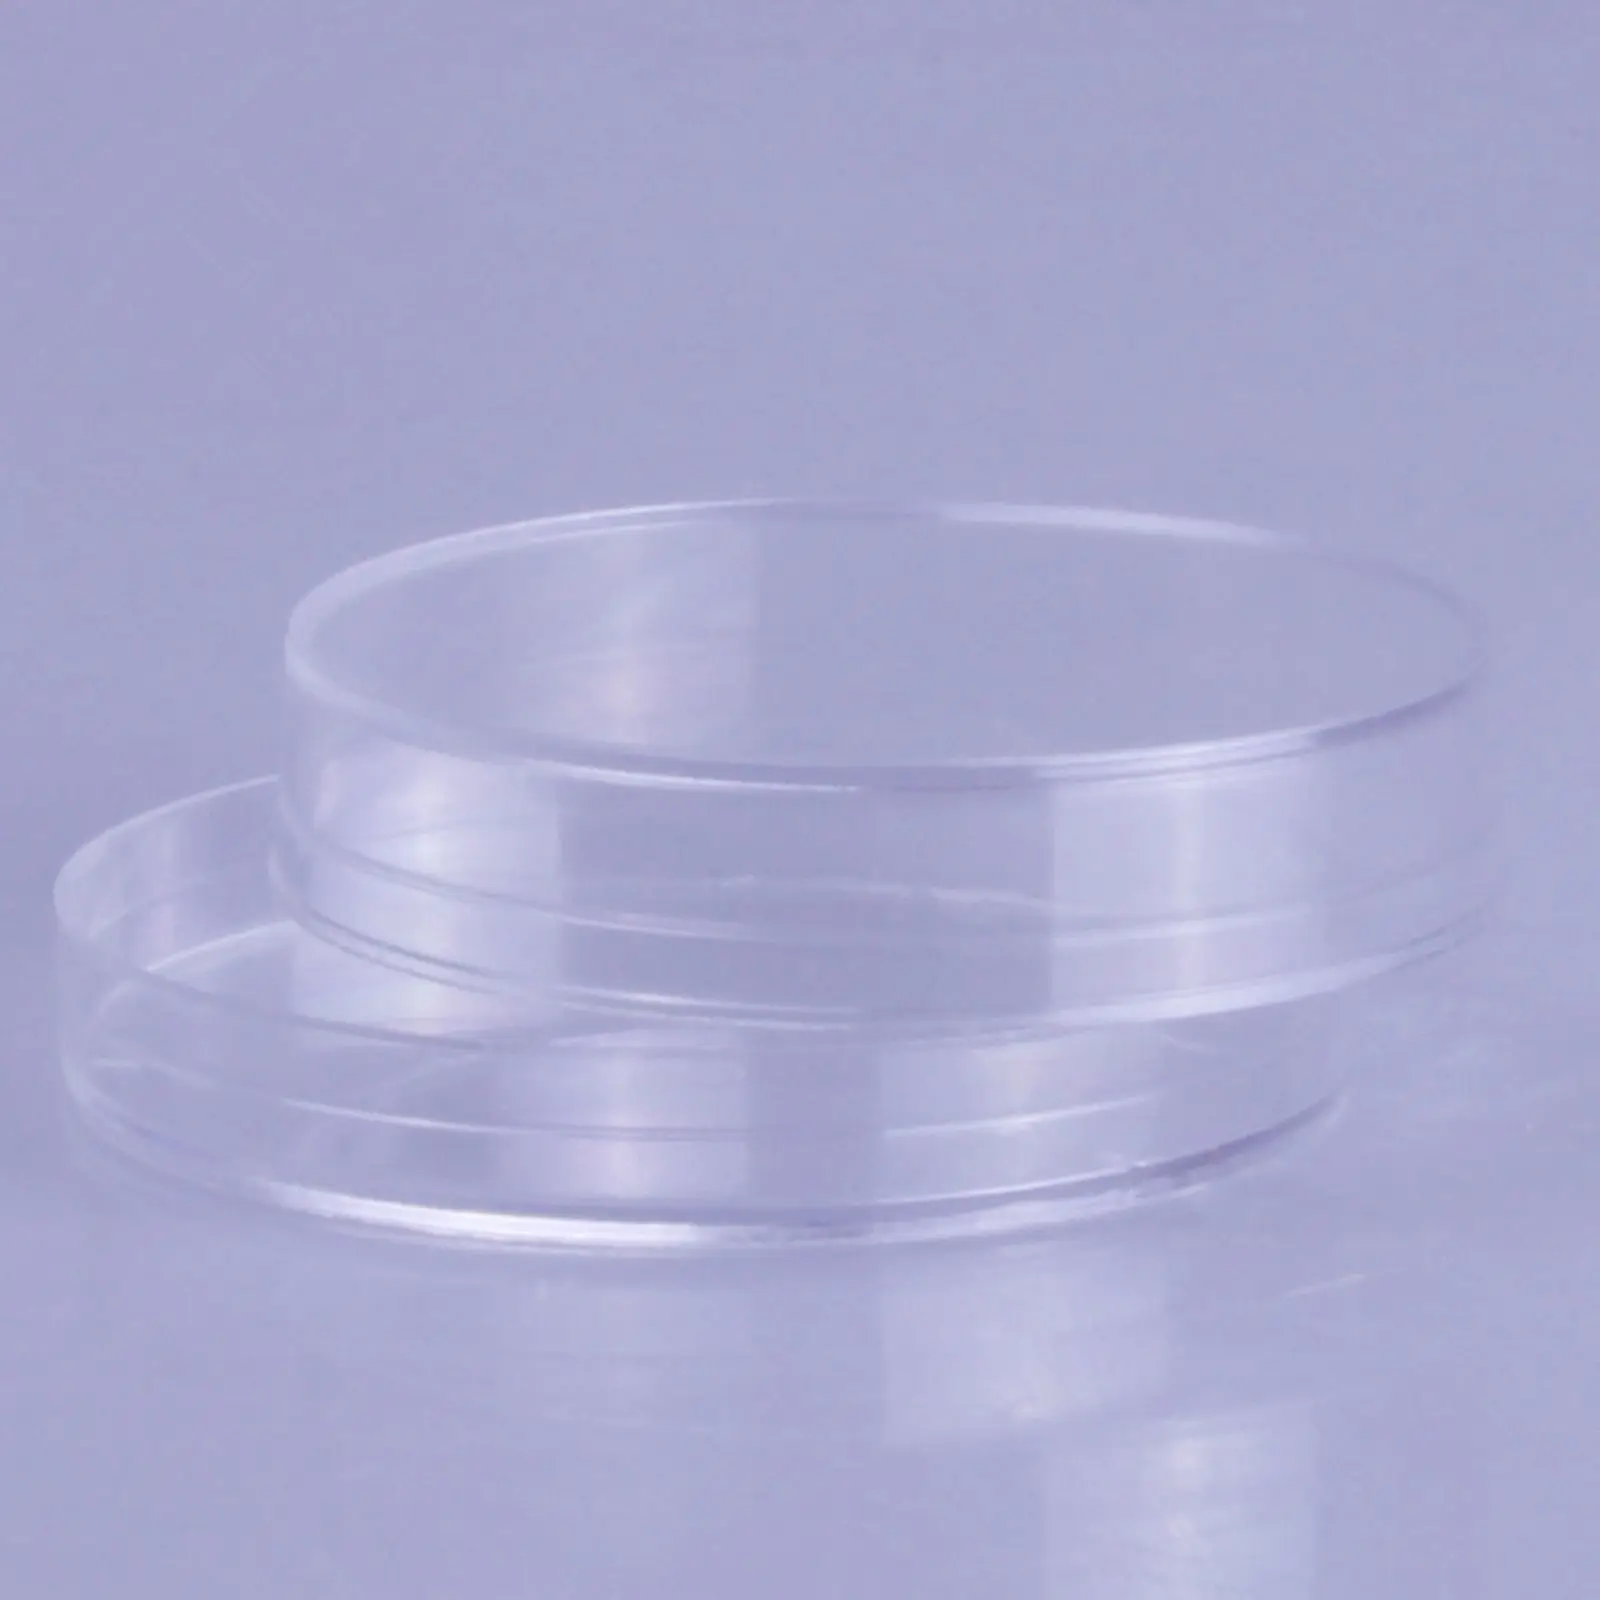 10 шт./пакет 70 мм Стерильная пластиковая чашка Петри из полистирола, пластина с крышкой, диаметр утилизации = 7 см